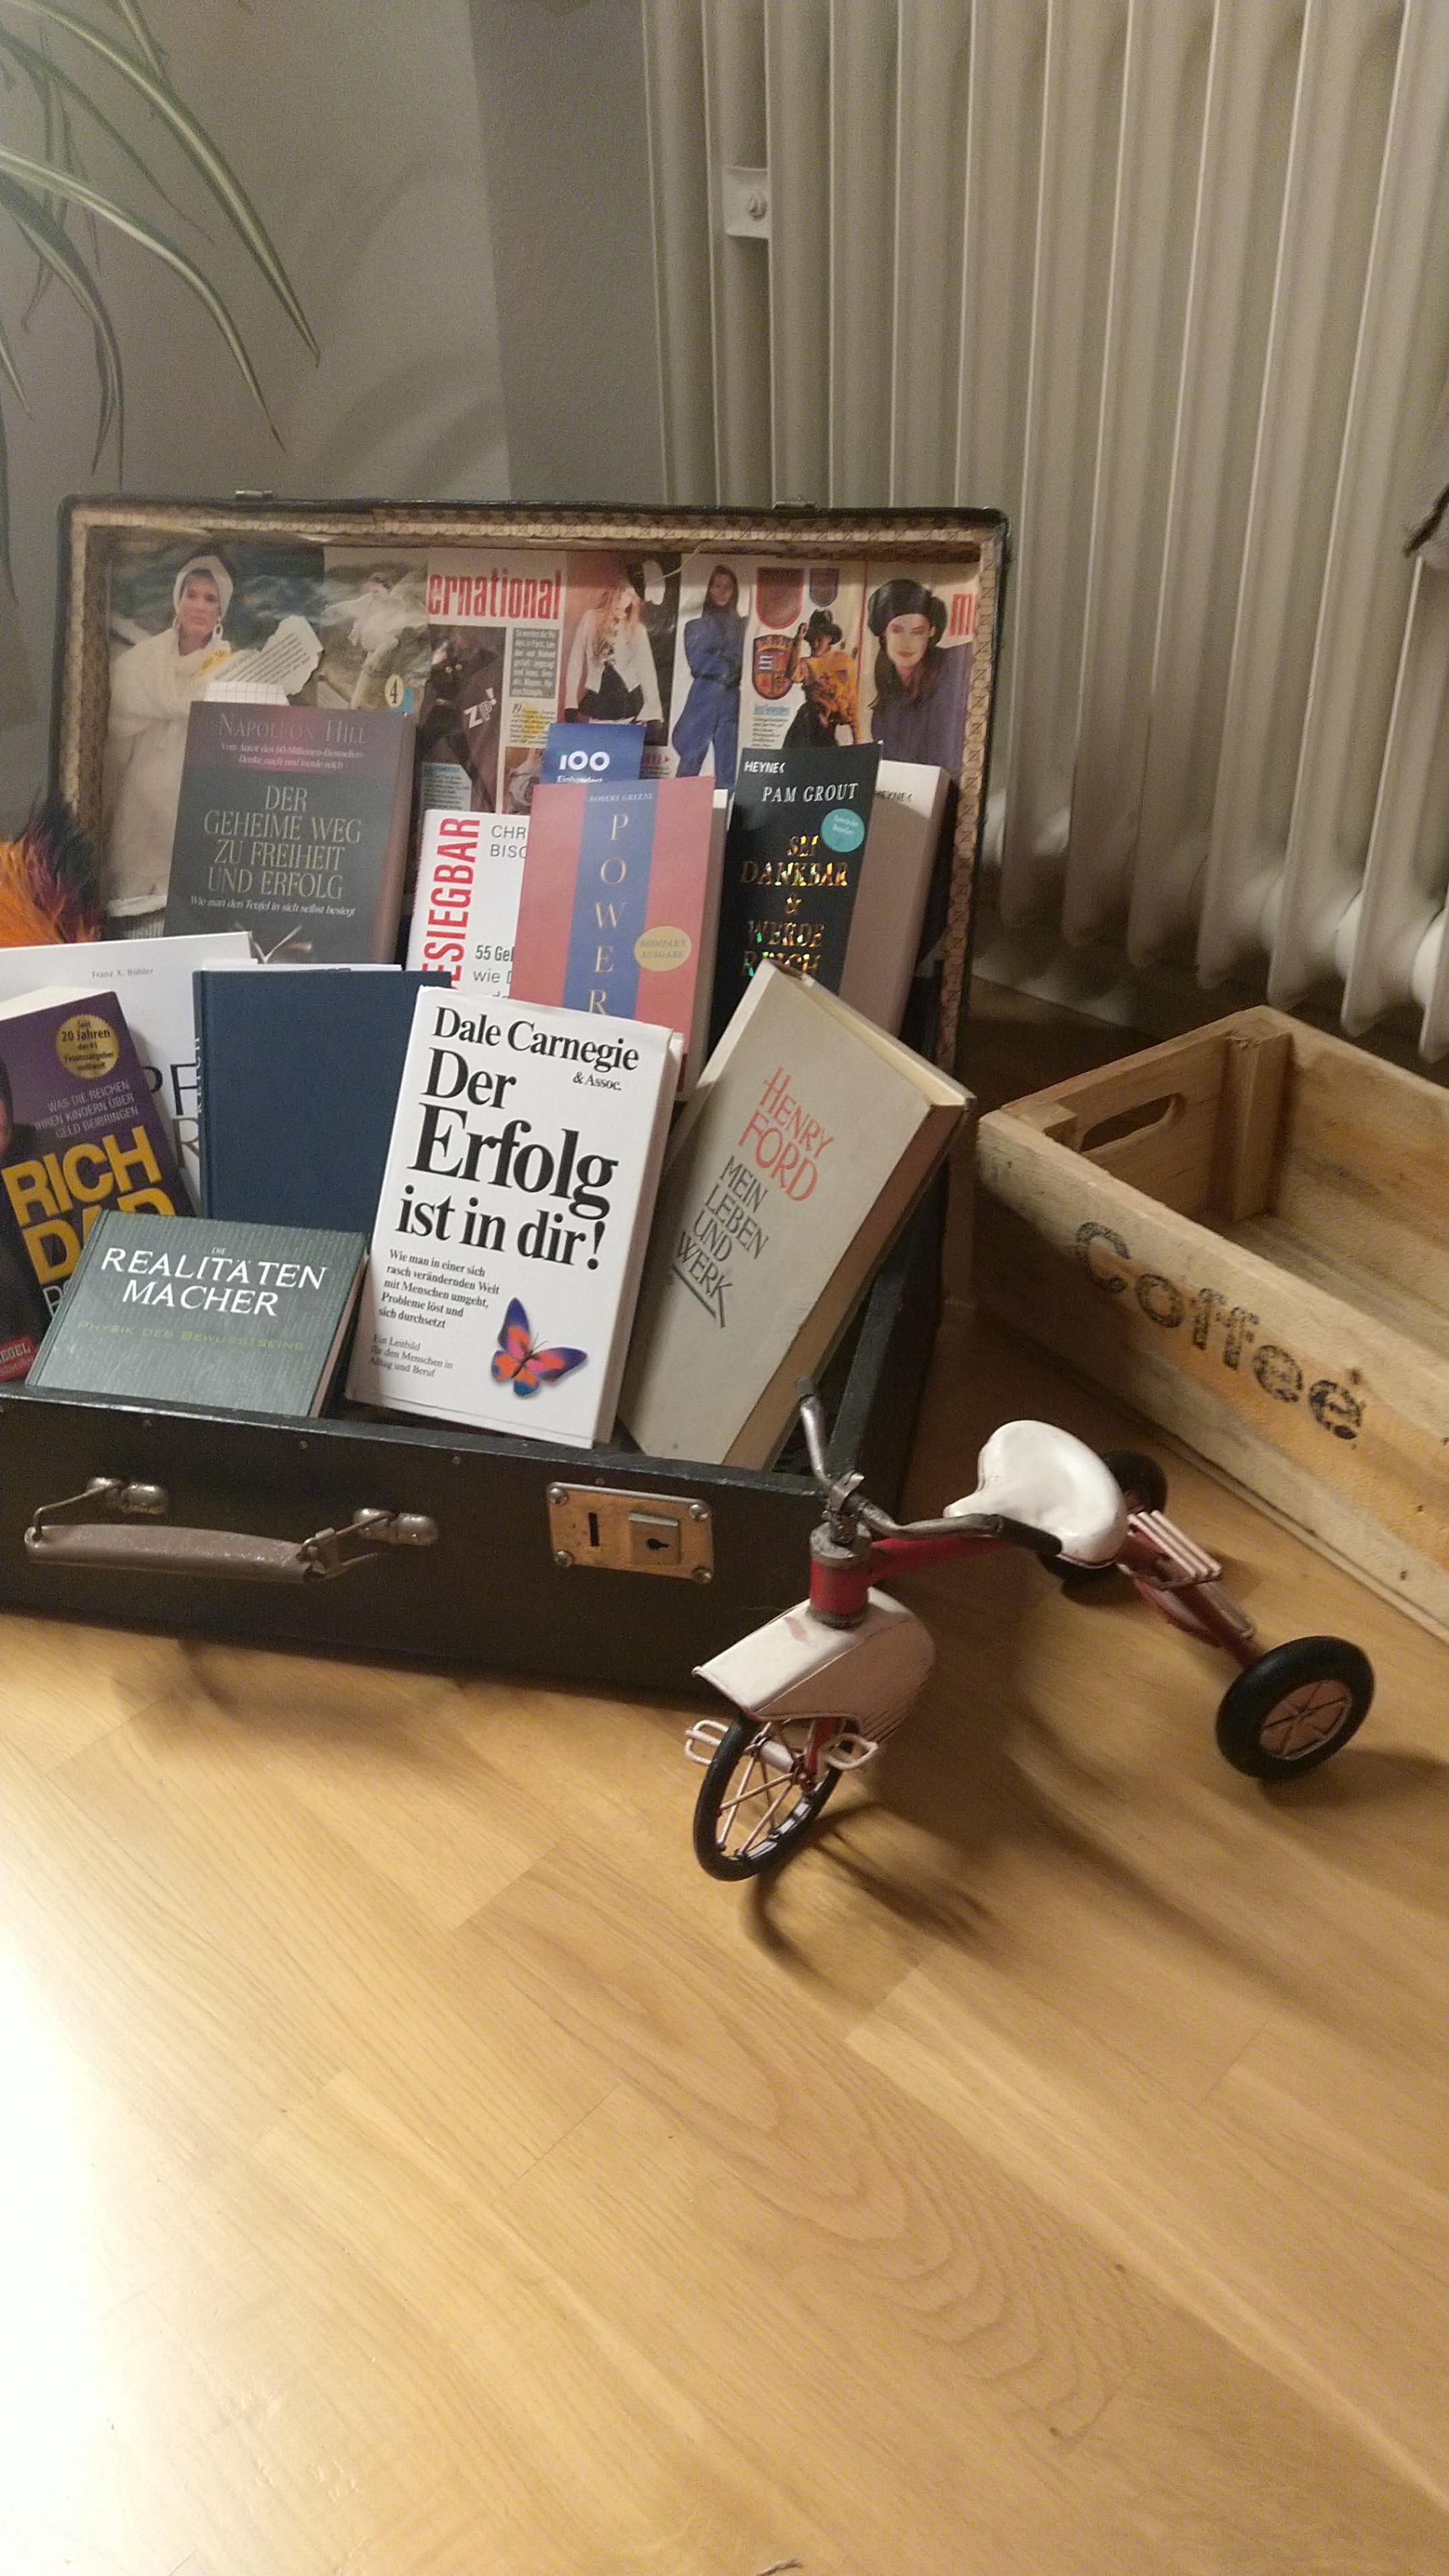 Meine kleine Bücherecke, mit einem alten Dreirad.
Neu mit Alt und Bildung
#bücher #alt #neu #bildung #koffer 